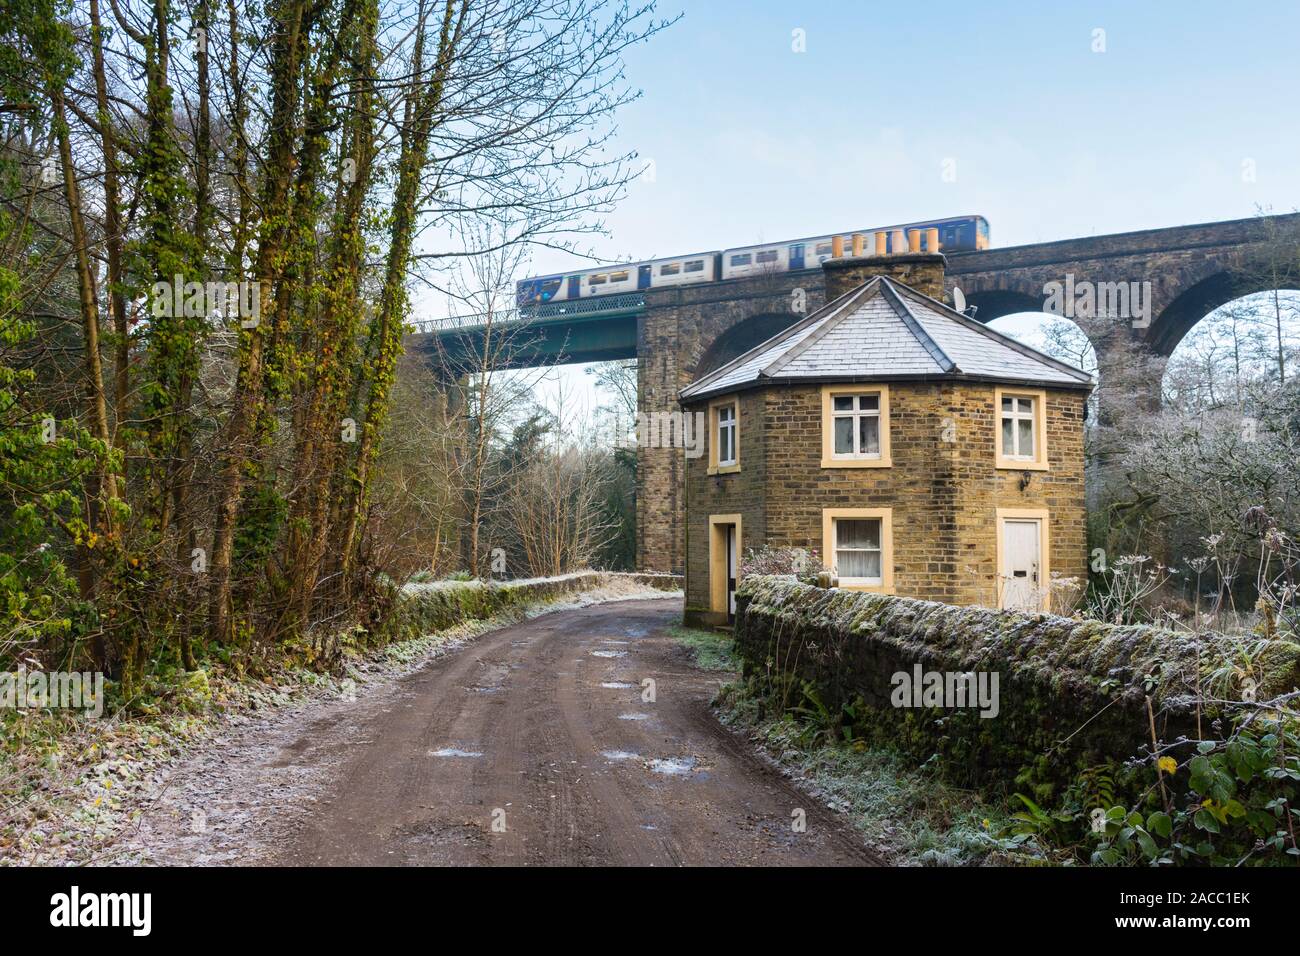 Schleuse Gate Cottage und ein Zug überquert die Bahn Viadukt (Hope Valley Line), Goyt Valley, in der Nähe von Marple, Greater Manchester, England, Großbritannien Stockfoto